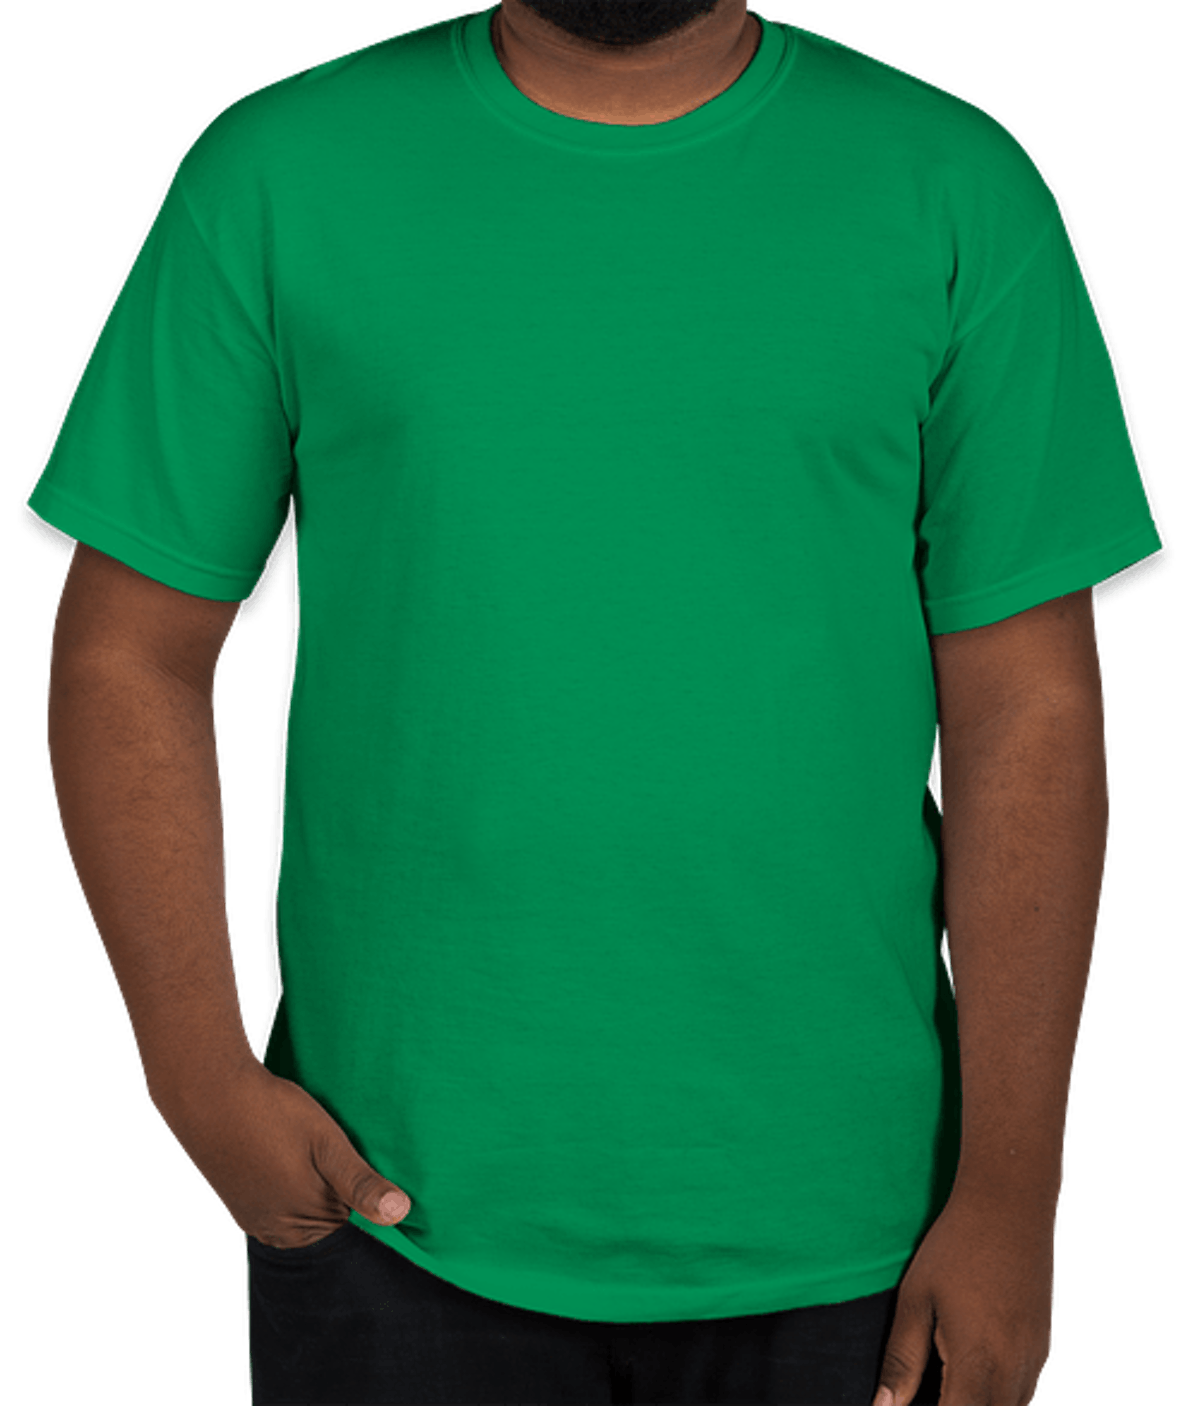 Custom T-shirt Light Weight 100% Cotton